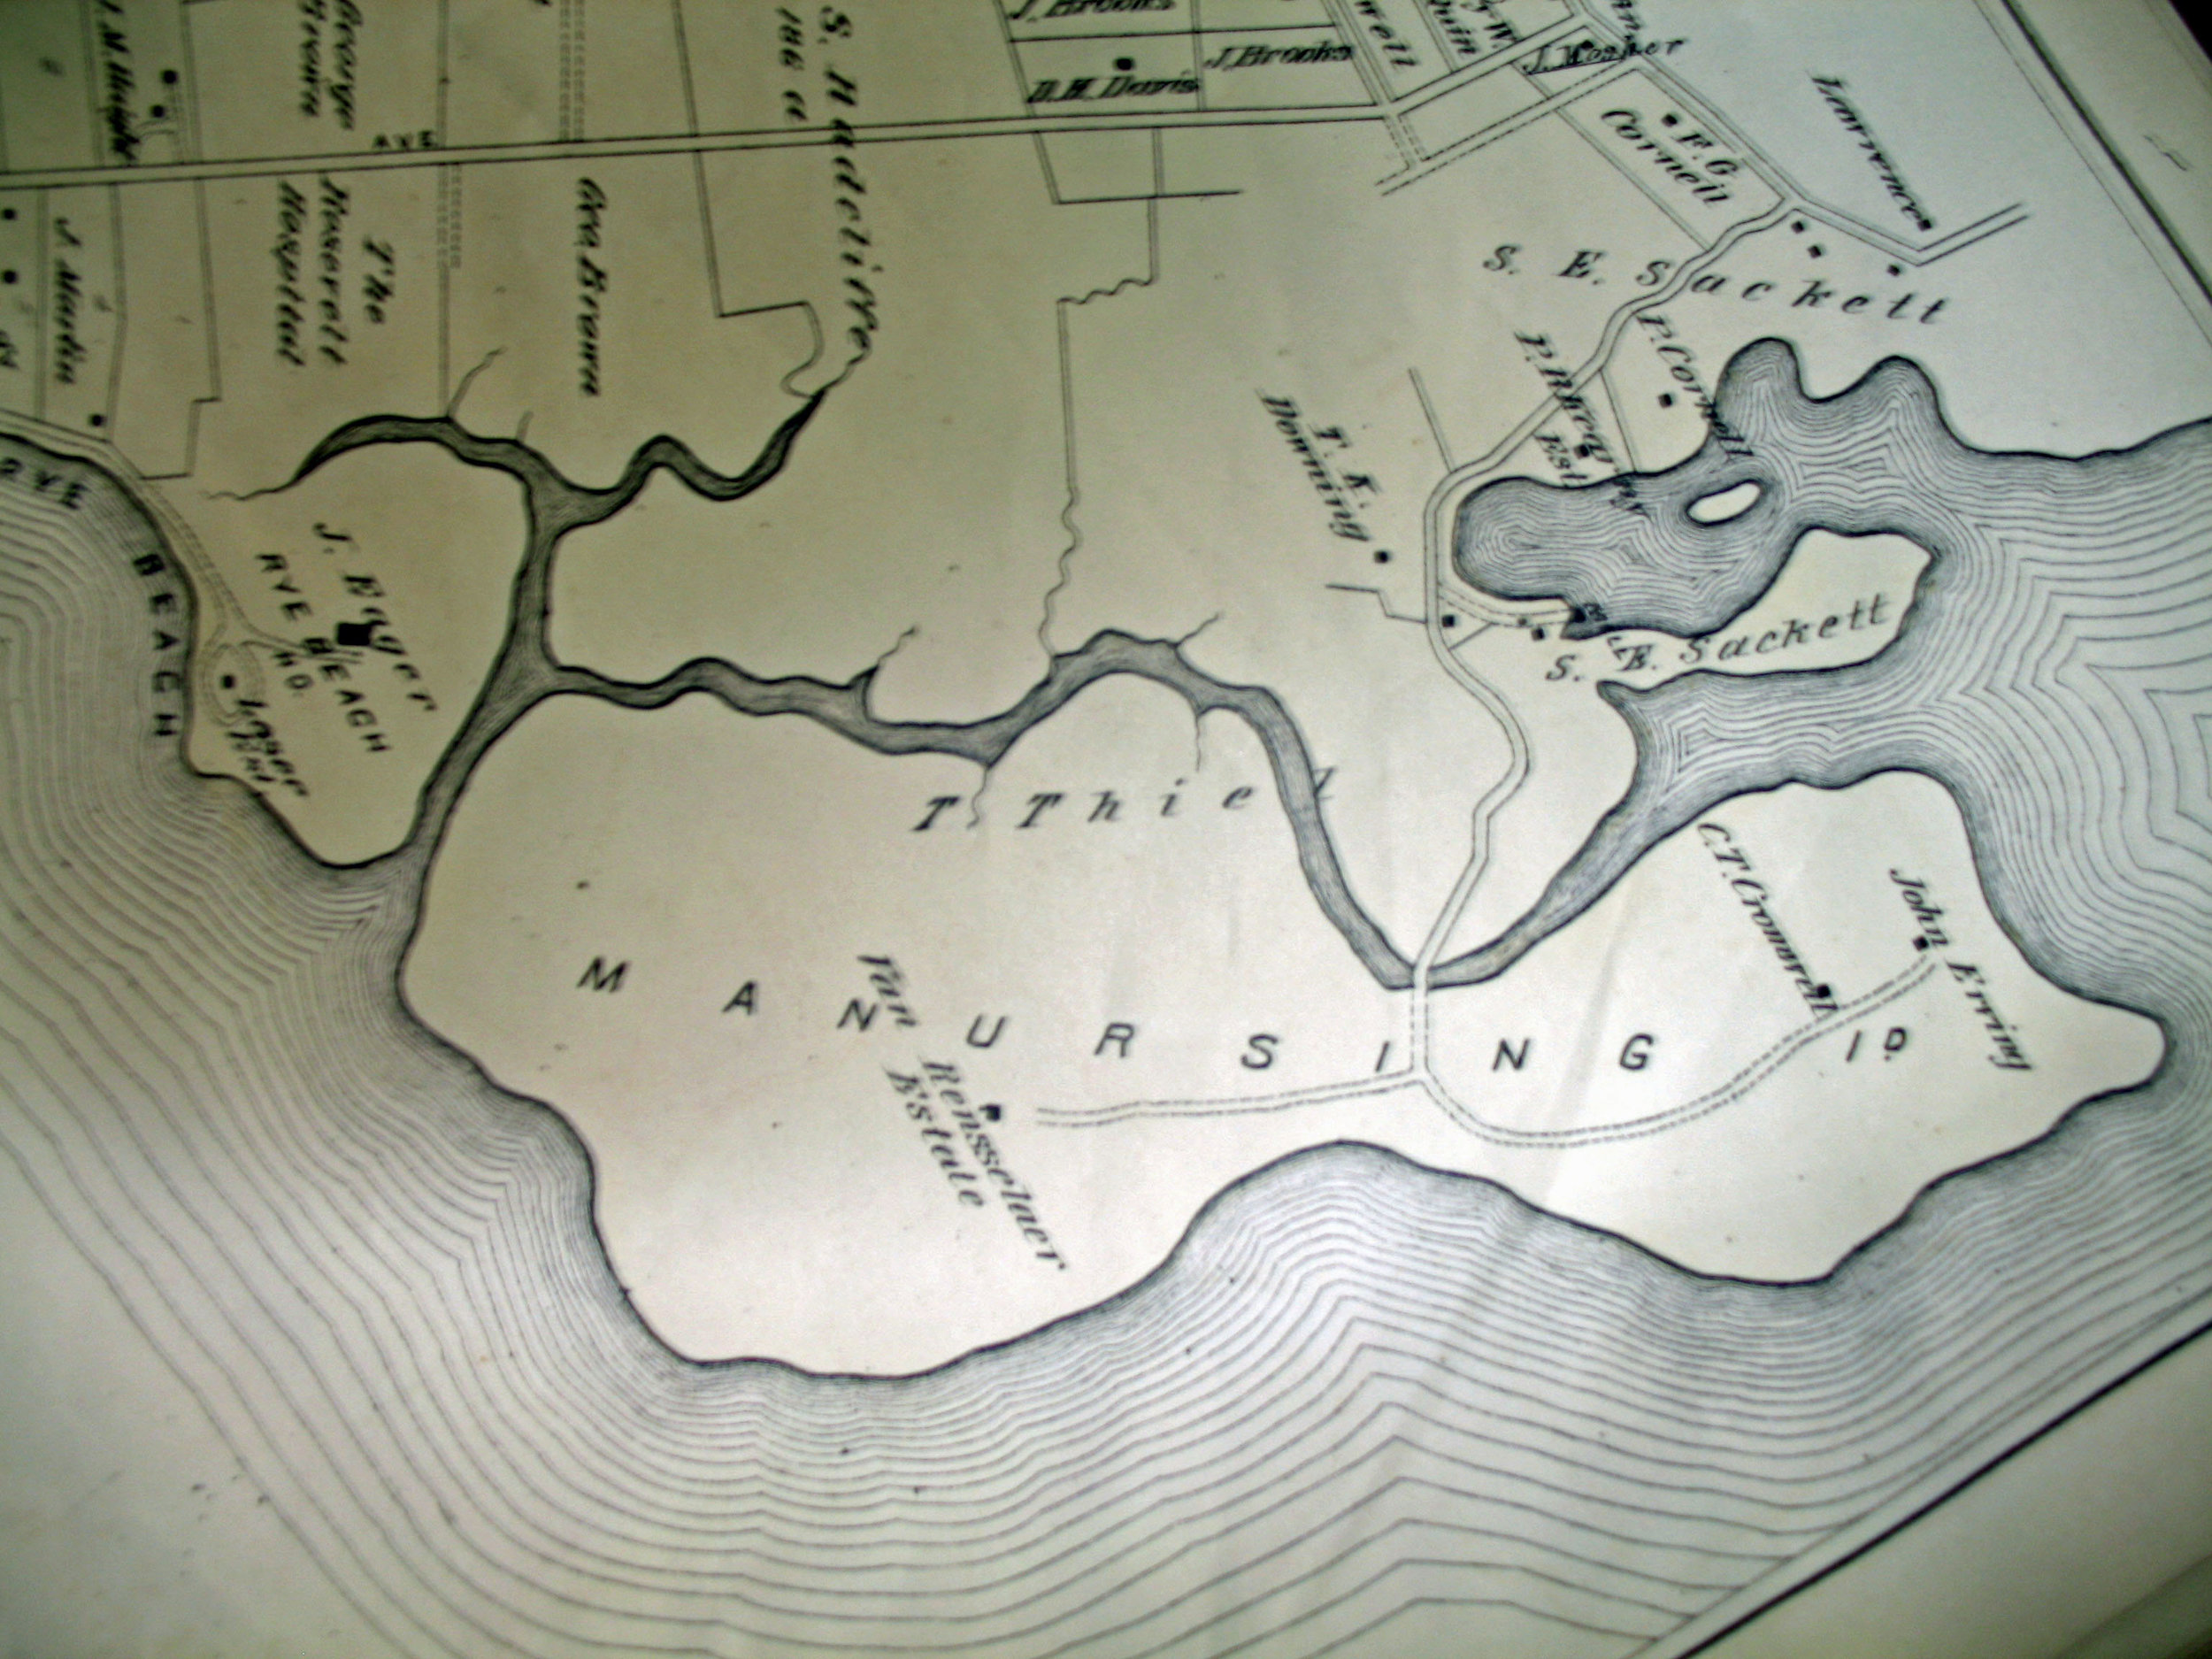 manursing map 1881.jpg